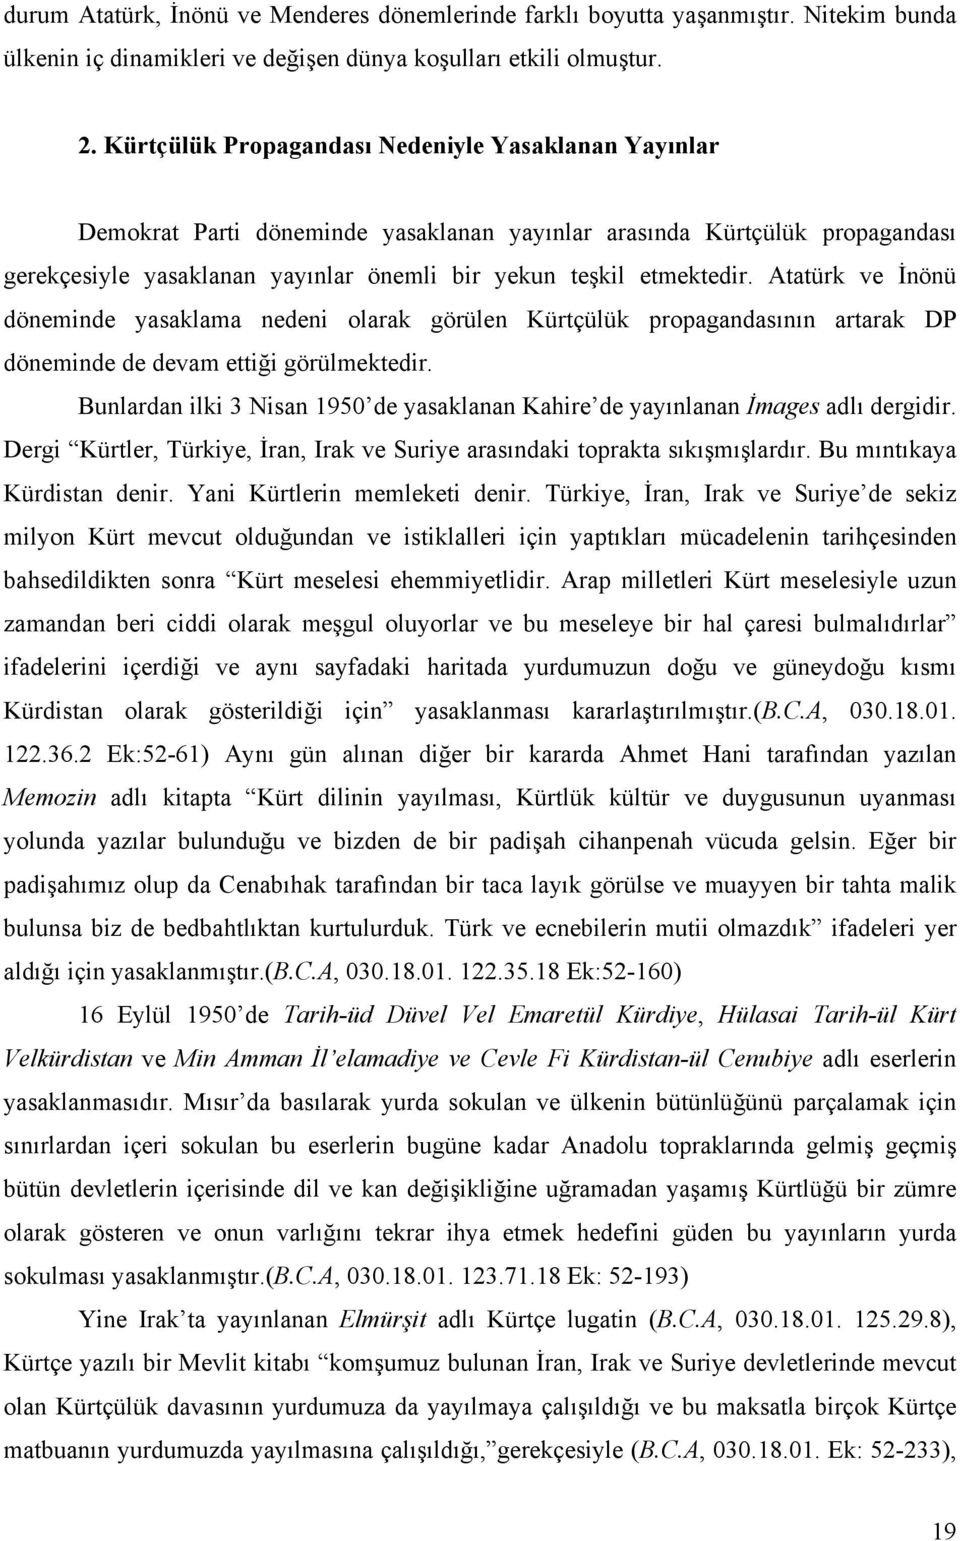 Atatürk ve İnönü döneminde yasaklama nedeni olarak görülen Kürtçülük propagandasının artarak DP döneminde de devam ettiği görülmektedir.